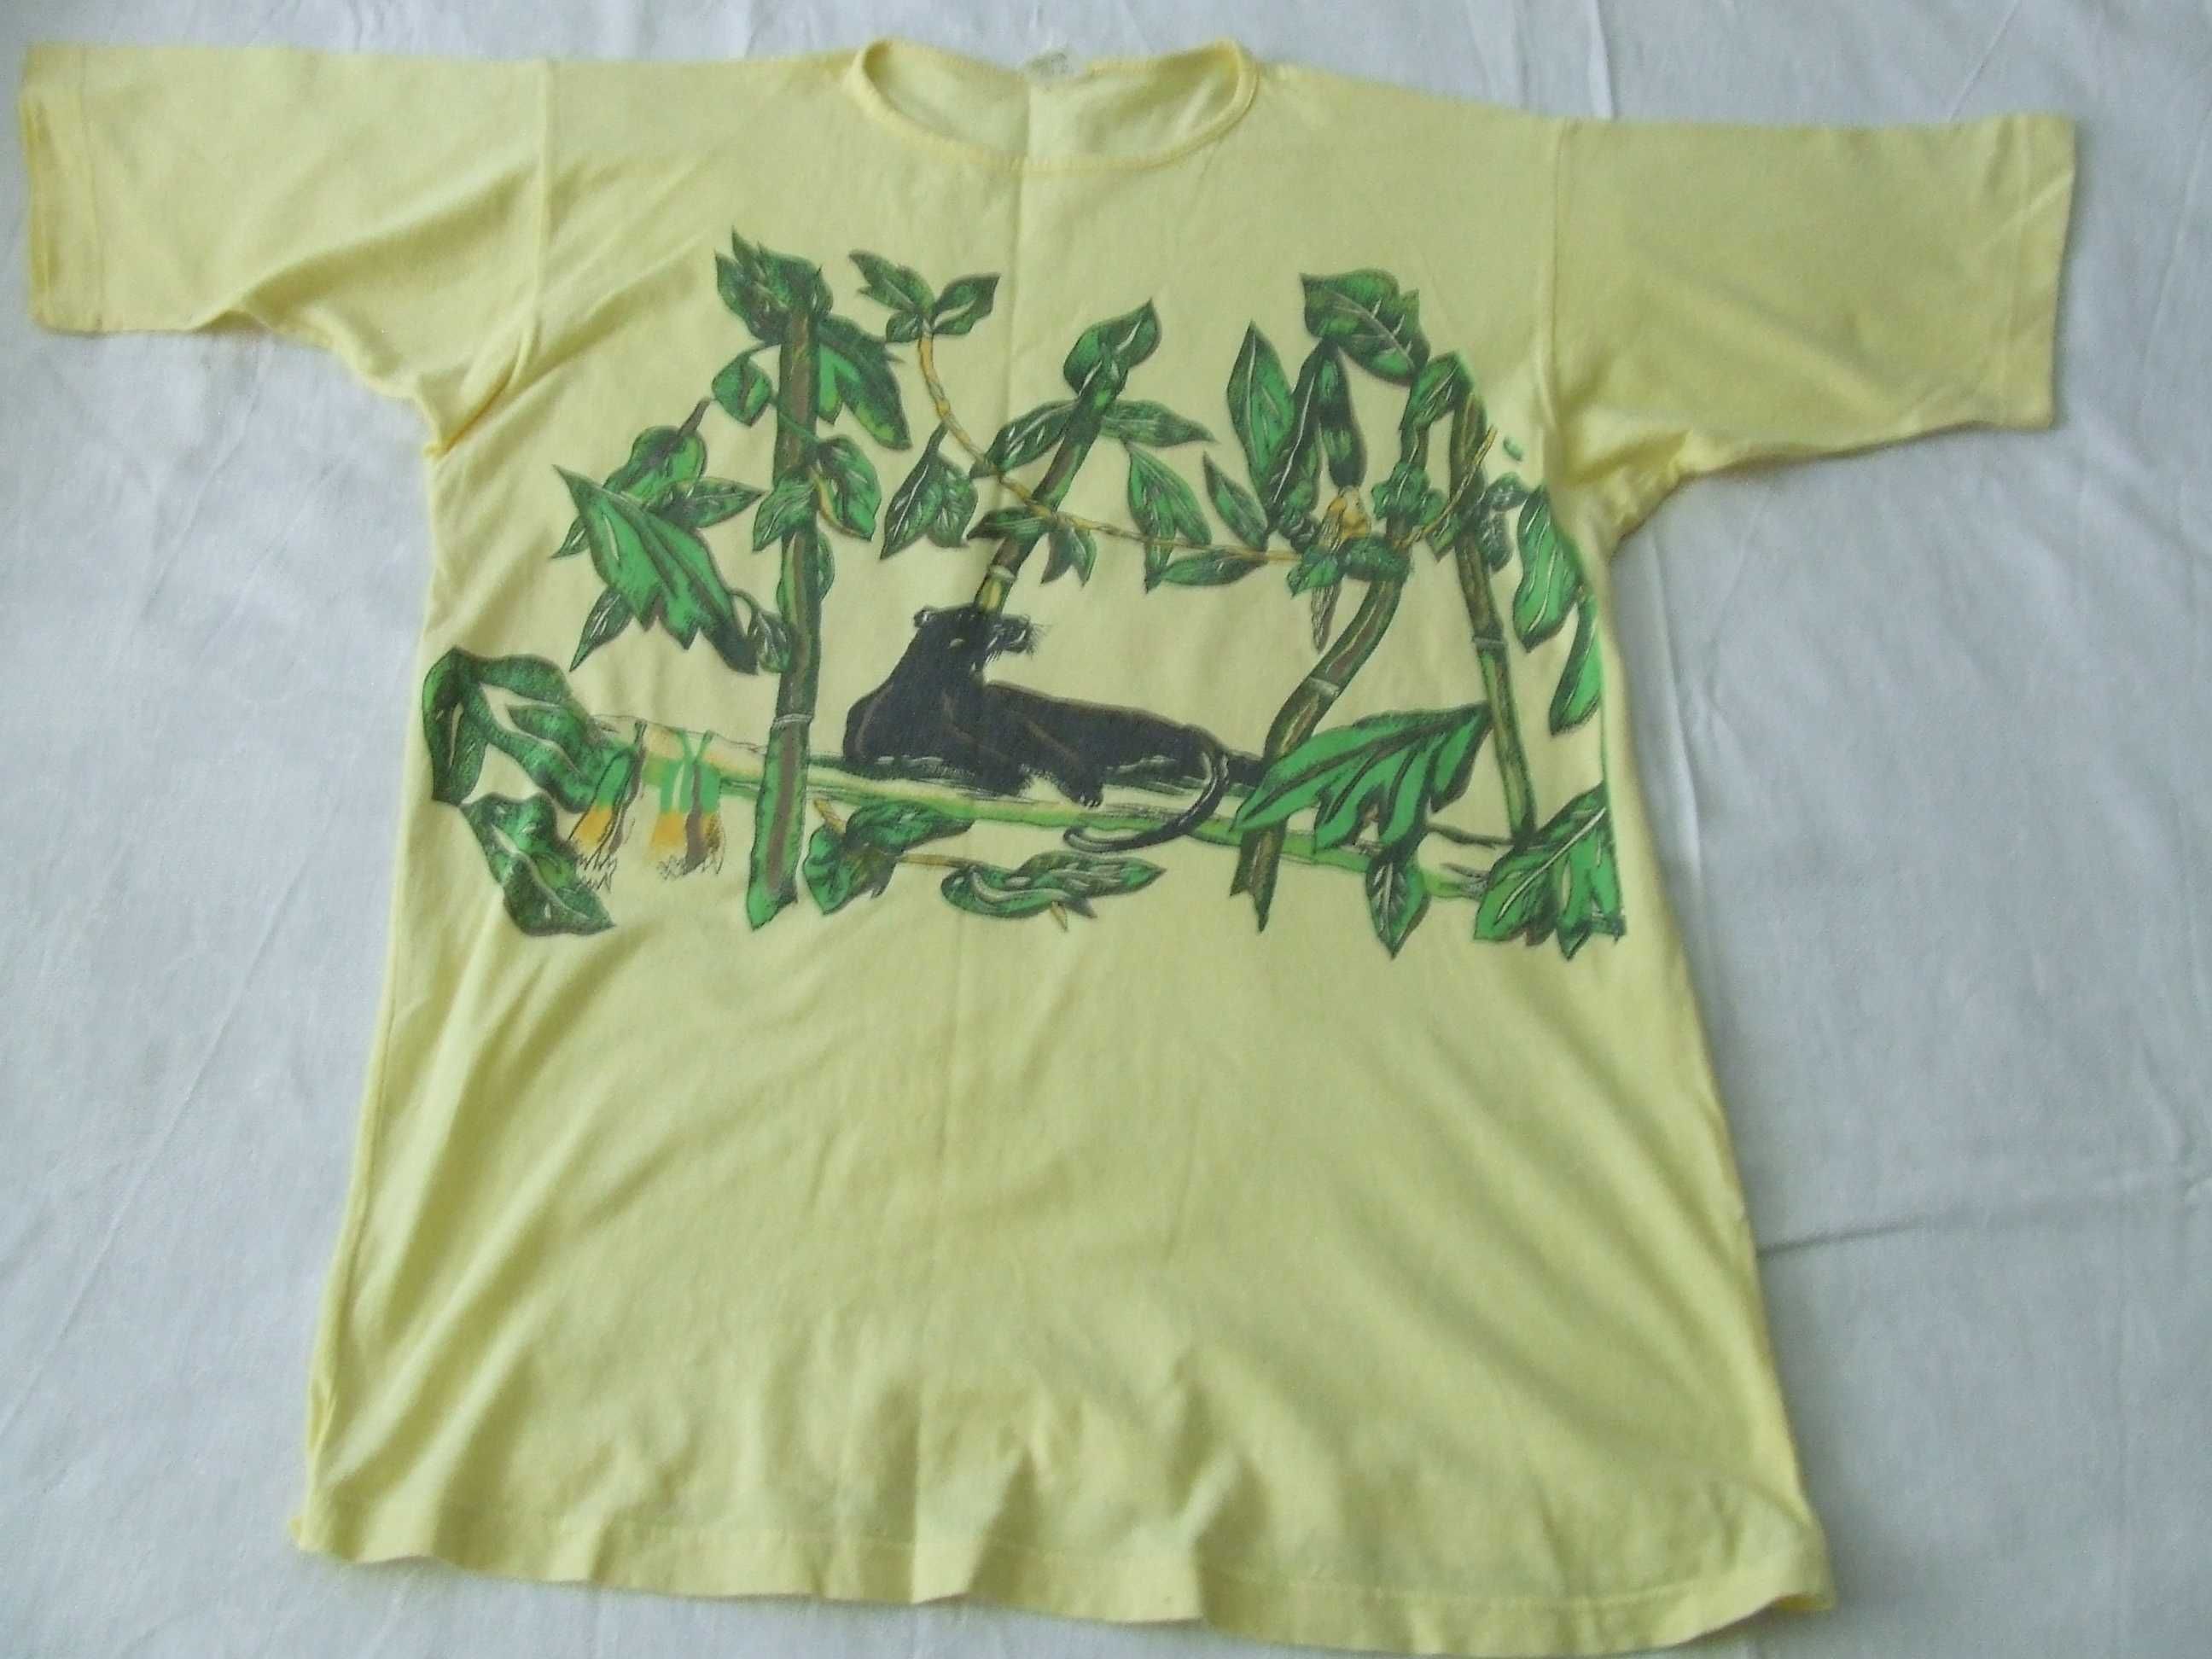 Bluzeczka Biaggini  wężowa skórka + Bluzeczka żółta z nadrukiem  R 42